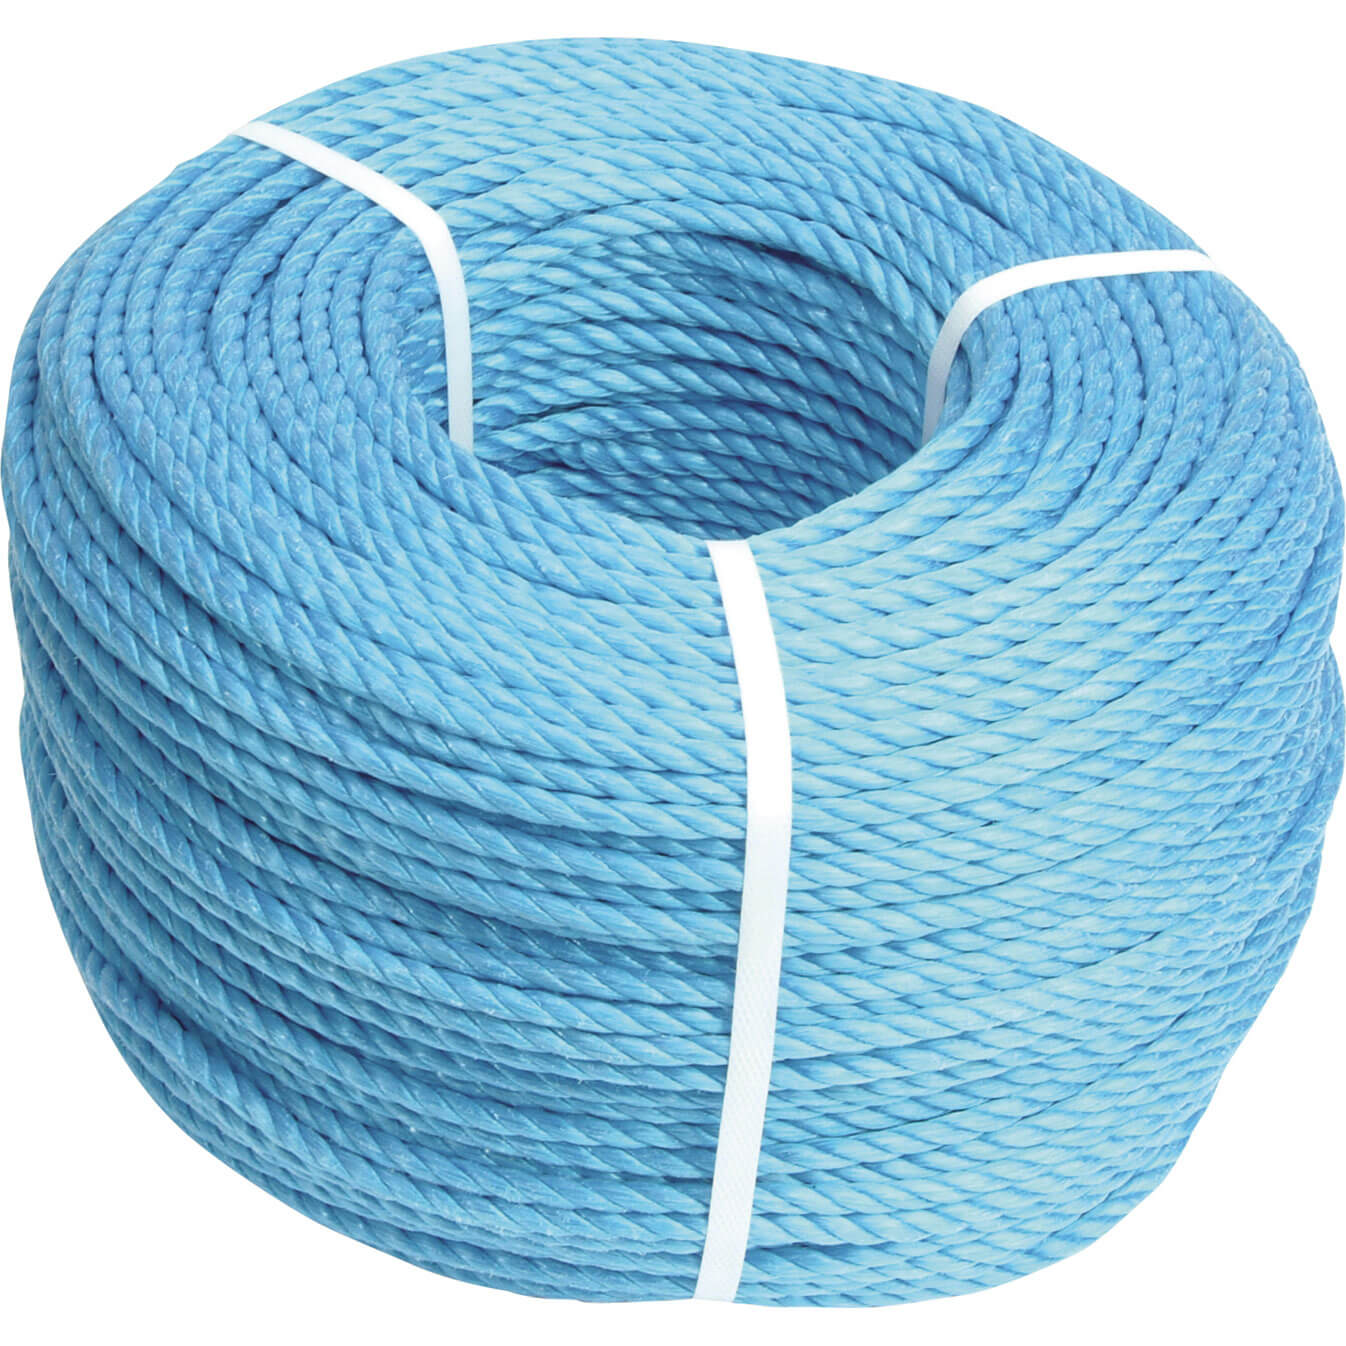 Image of Faithfull Blue Poly Rope 12mm 30m